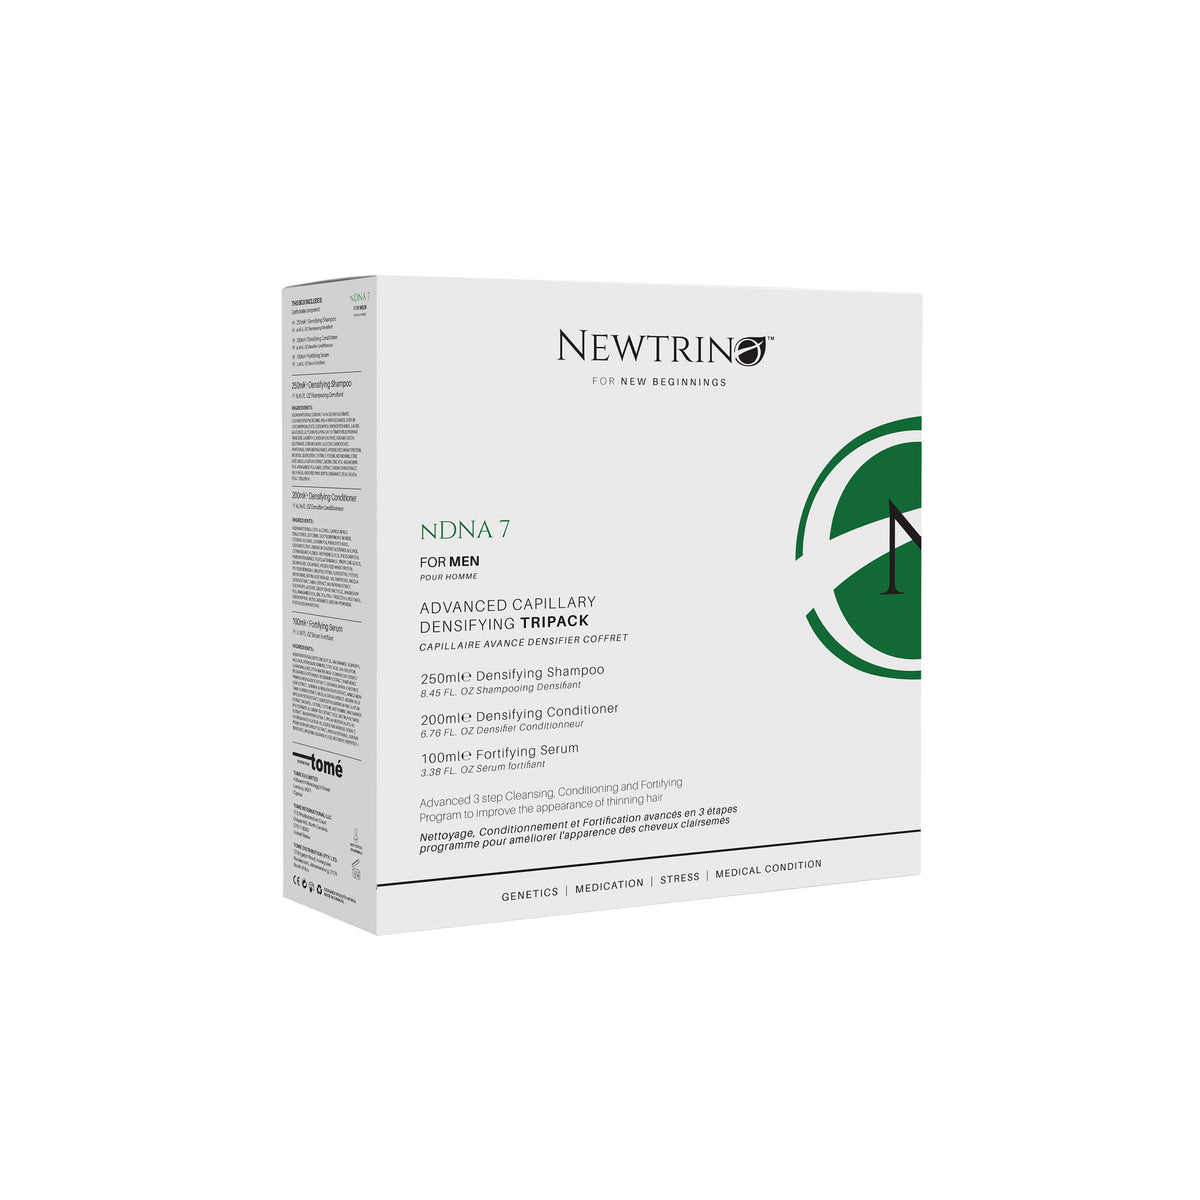 Newtrino NDNA 8 Densifying Tri-Pack For Men